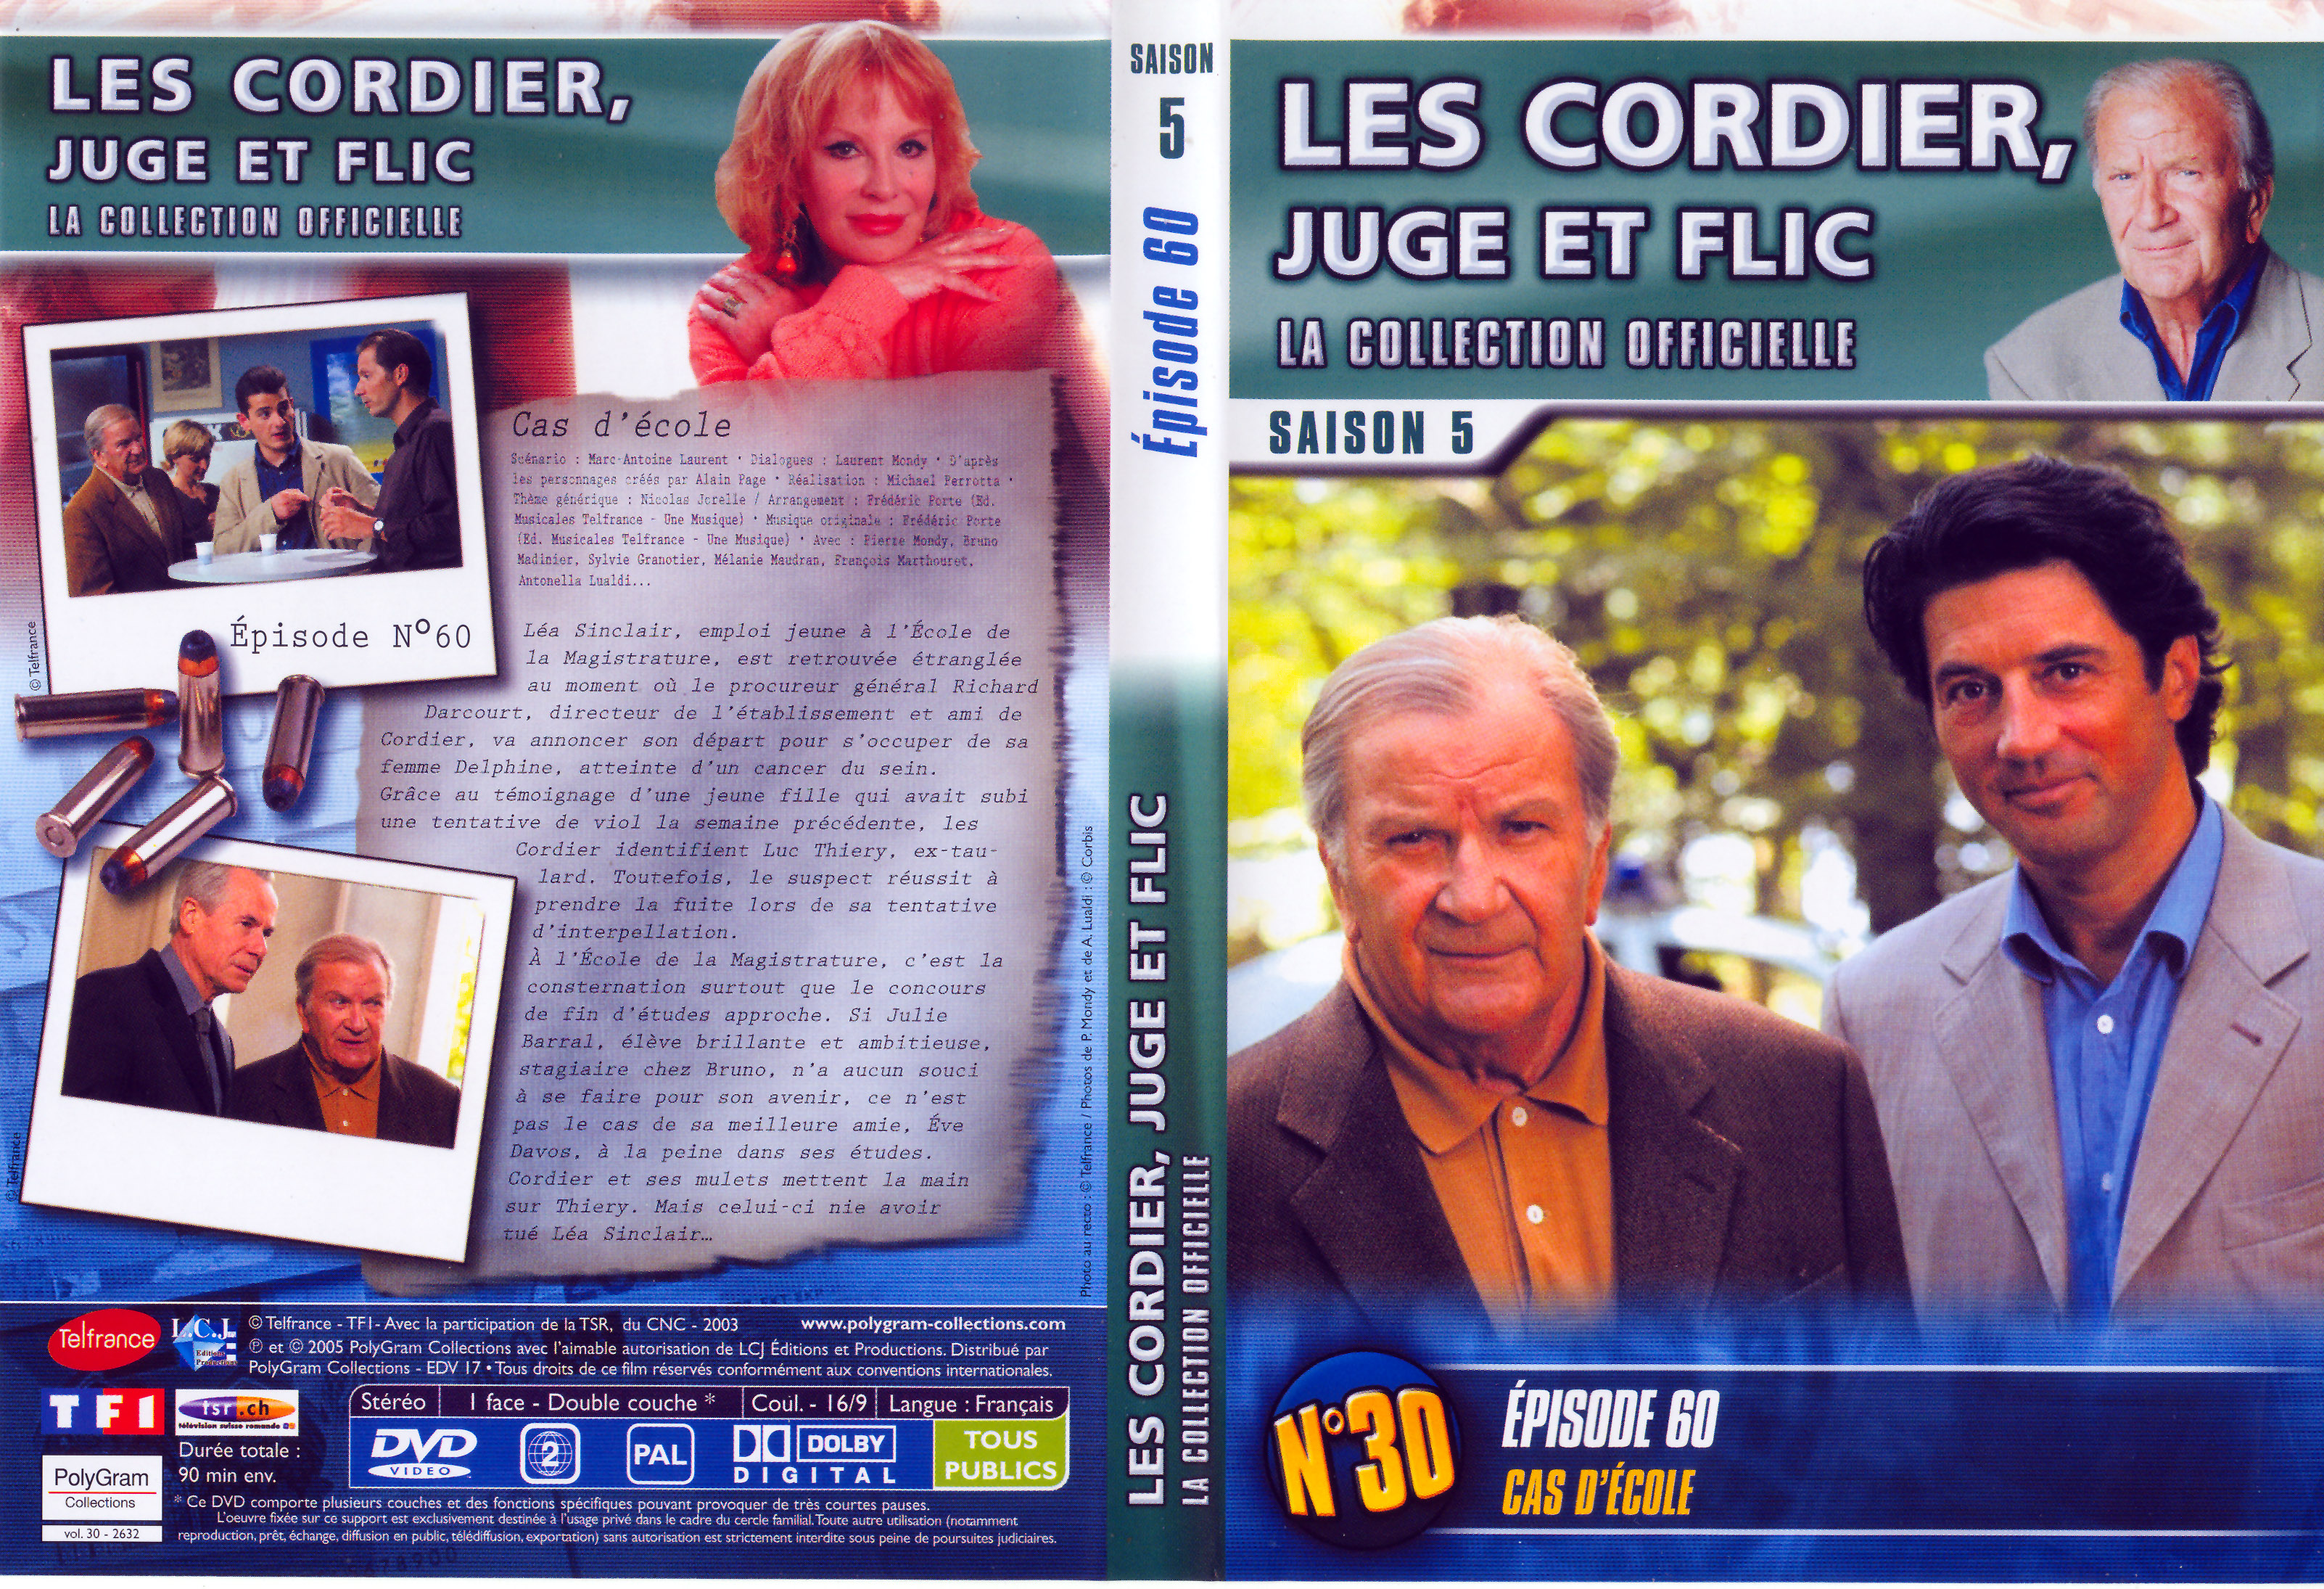 Jaquette DVD Les cordier juge et flic Saison 5 vol 30